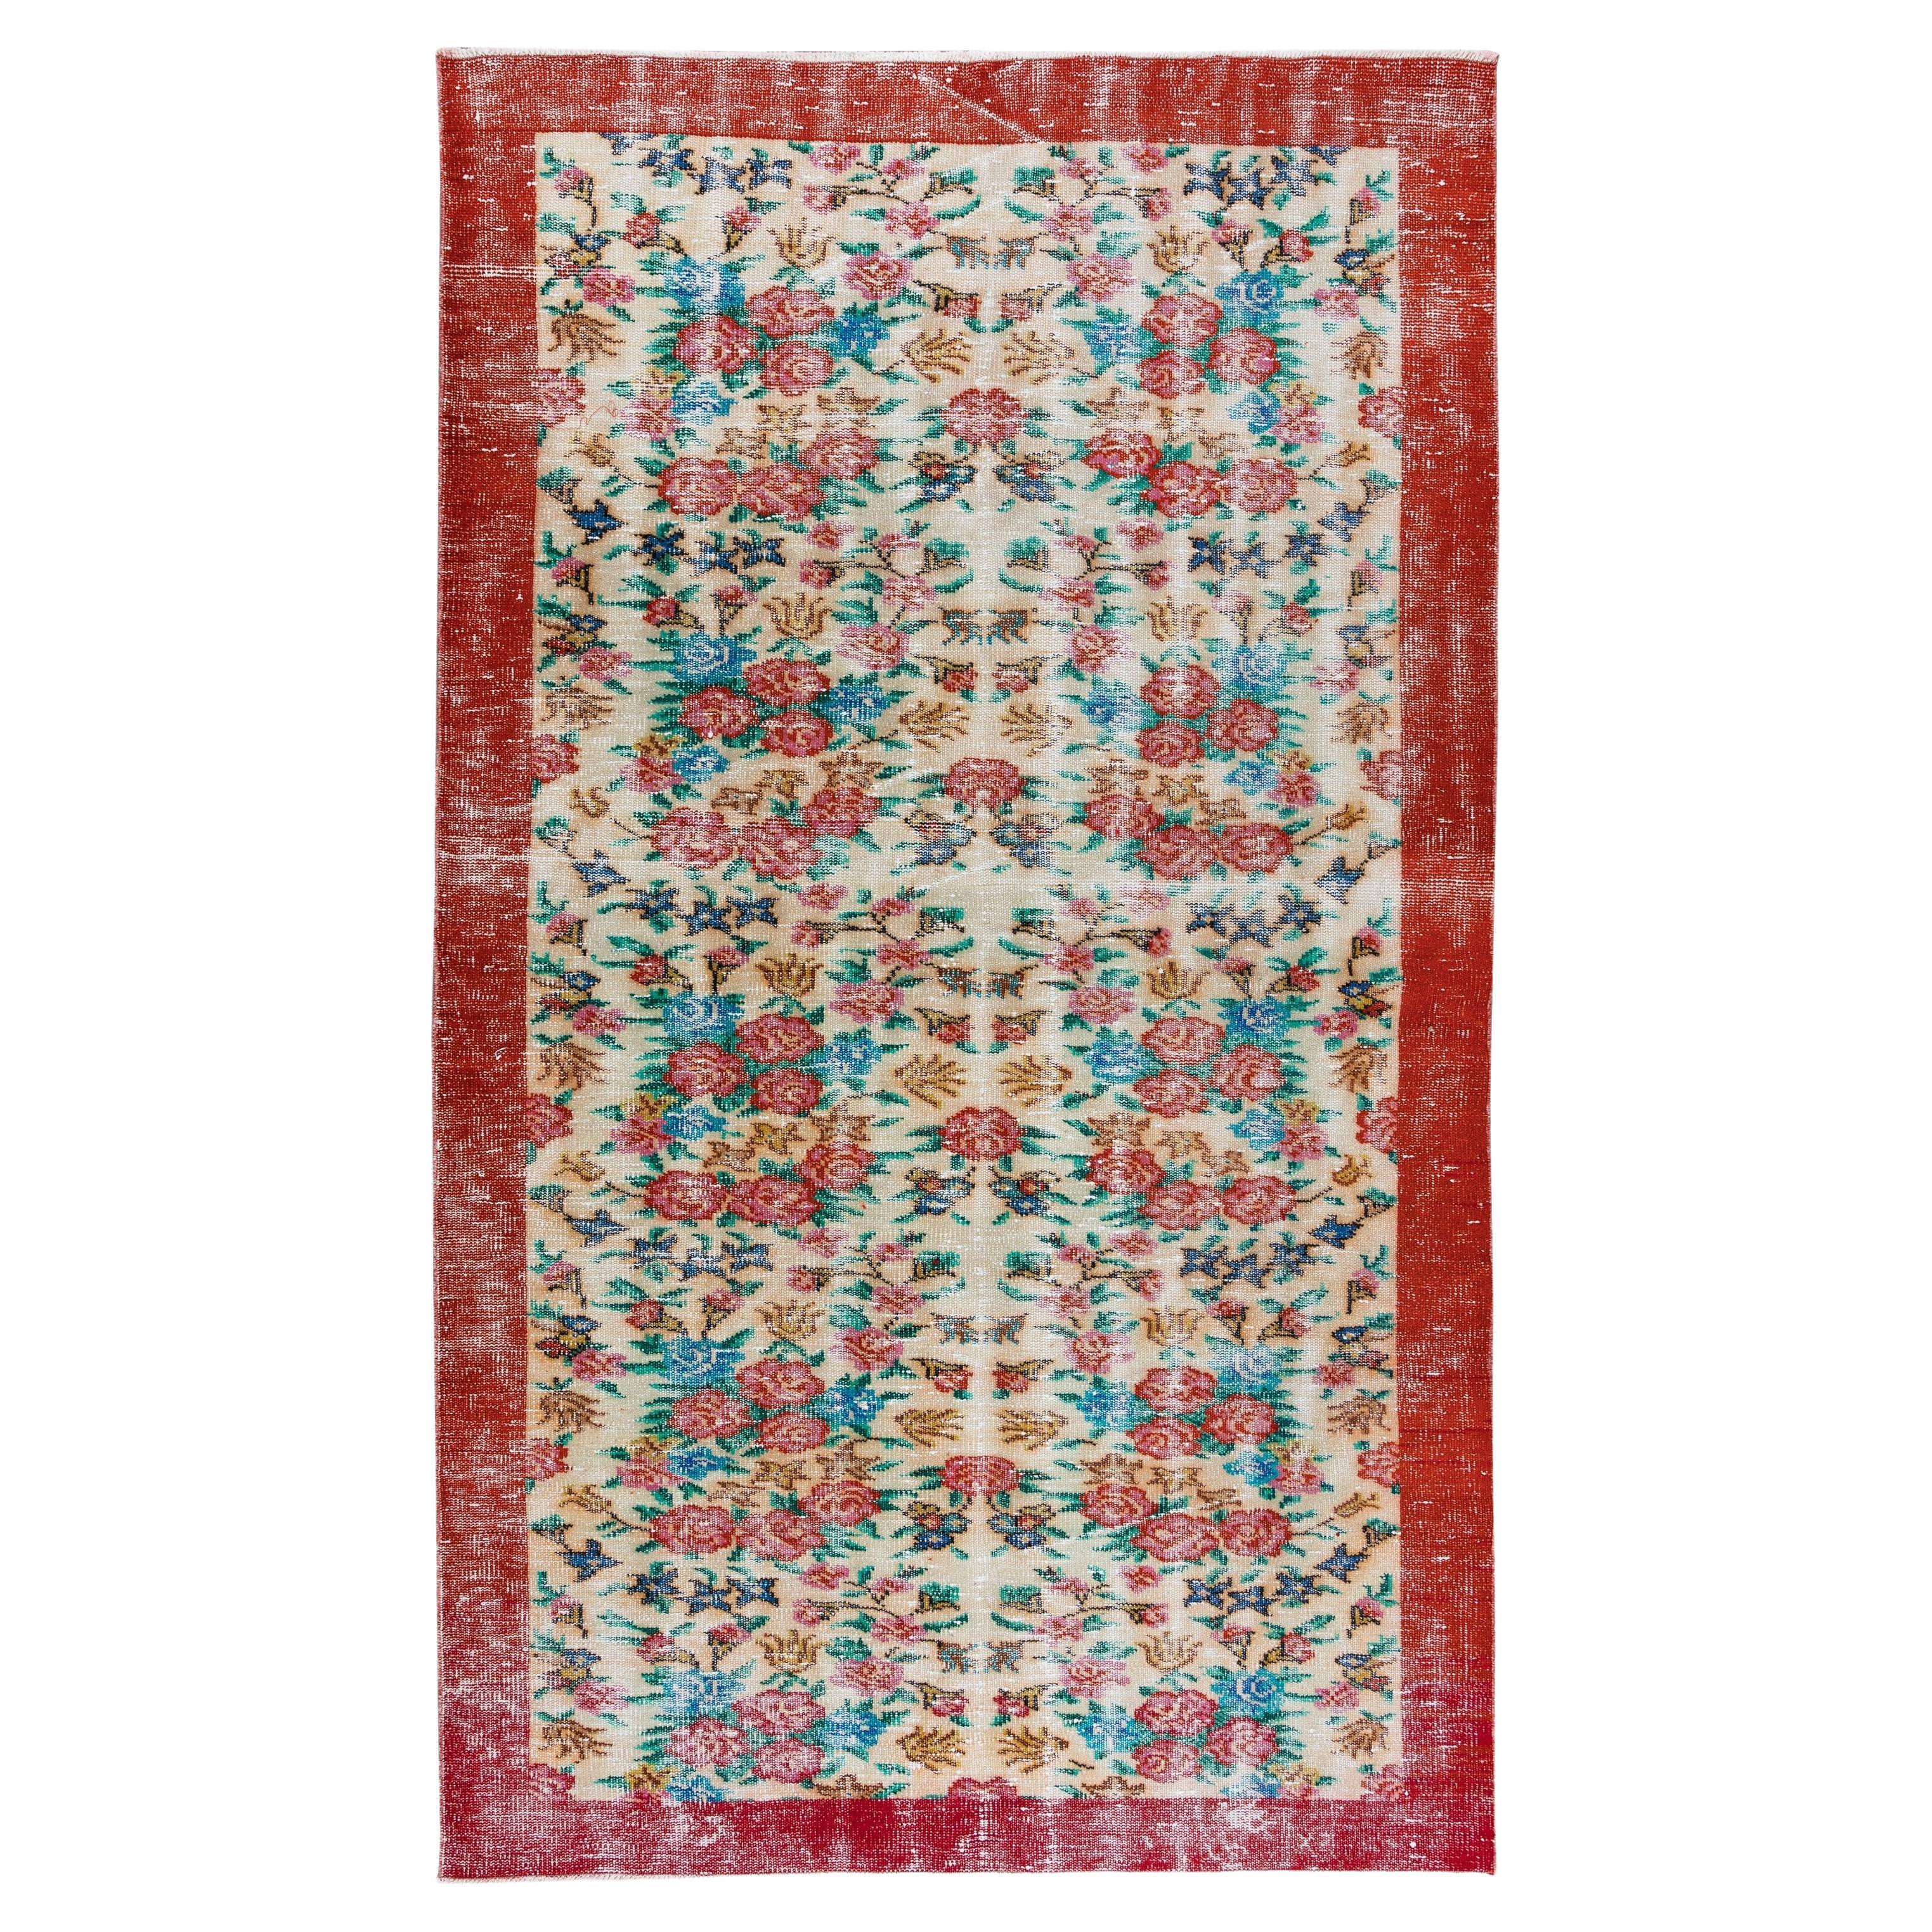 5.2x8.8 Ft Authentischer handgefertigter türkischer Vintage-Teppich mit Blumenmuster für Büro und Zuhause